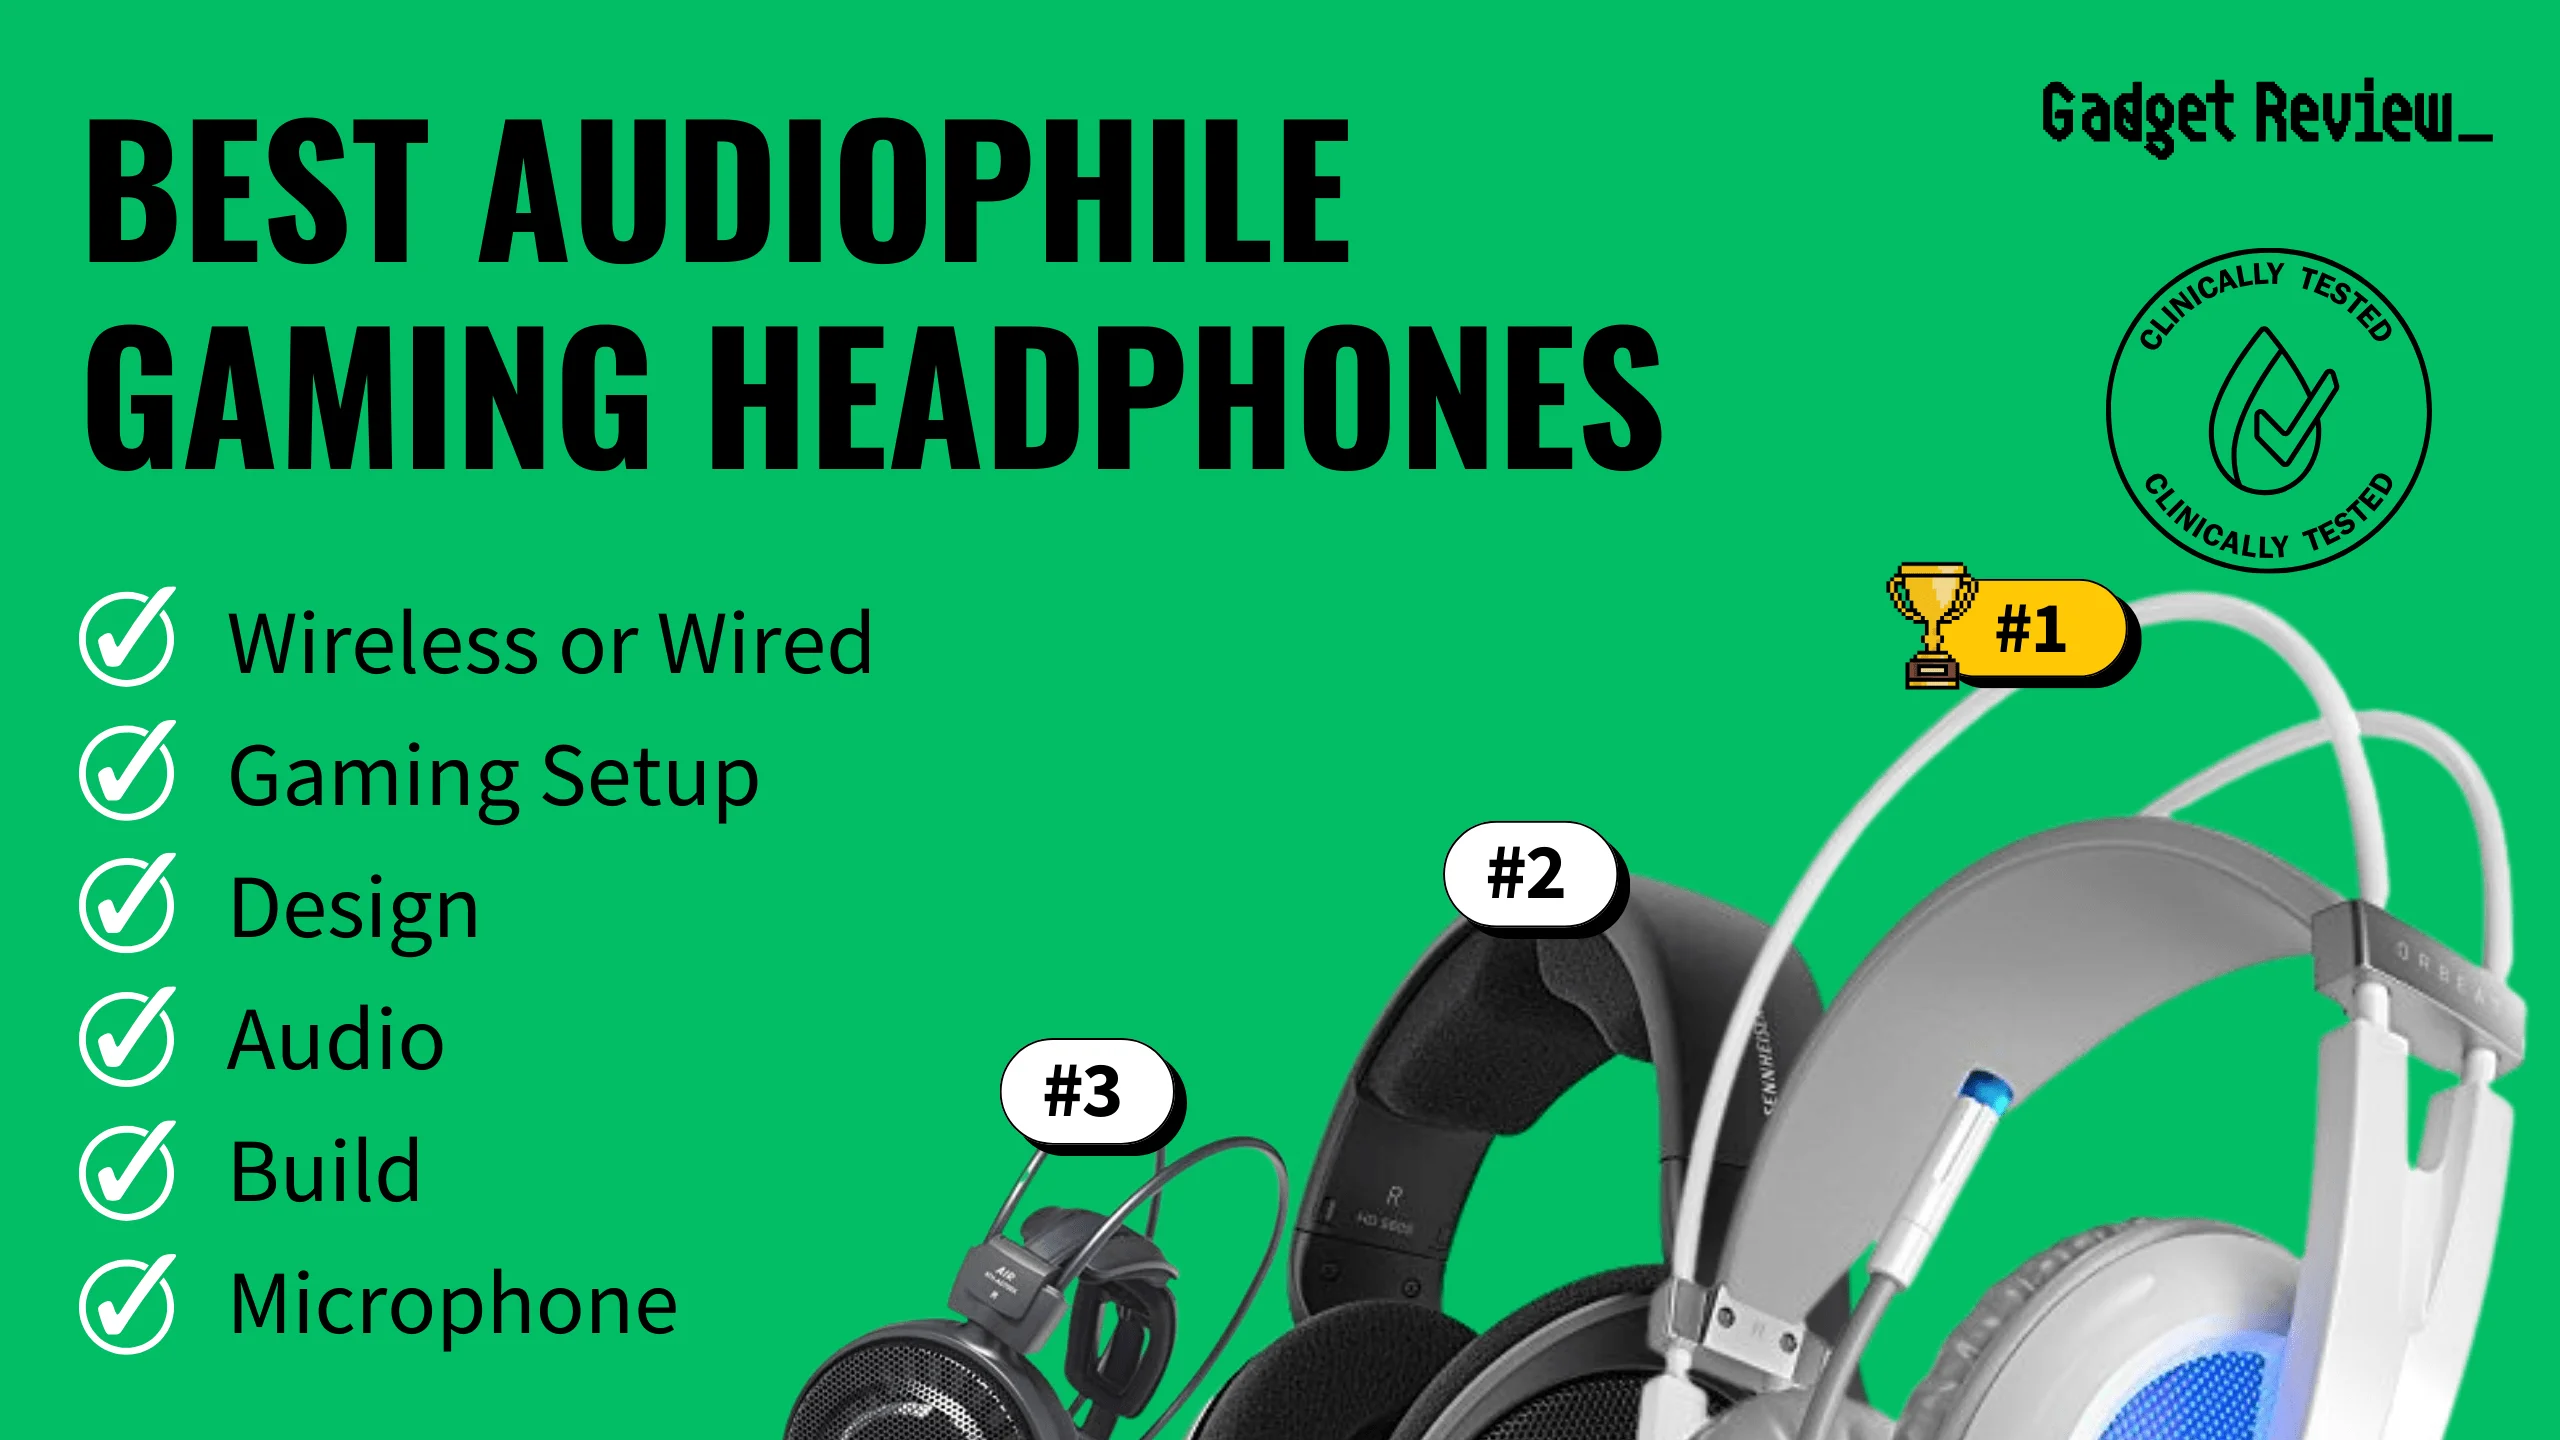 Best Audiophile Gaming Headphones